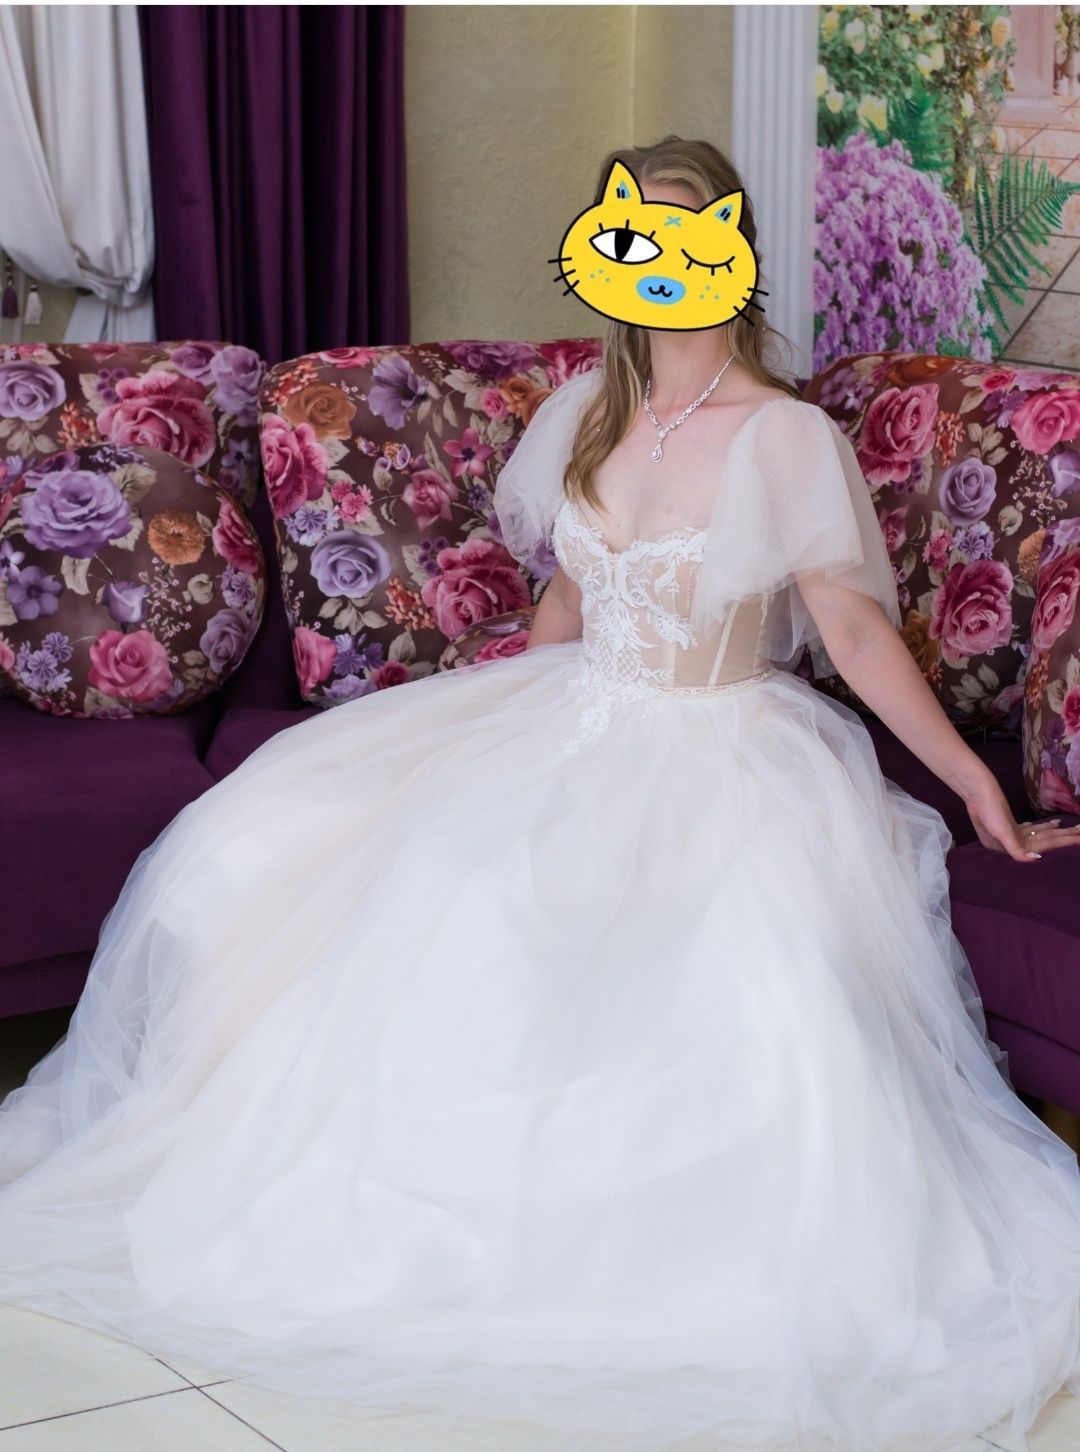 Свадебное платье красивое ,модное .